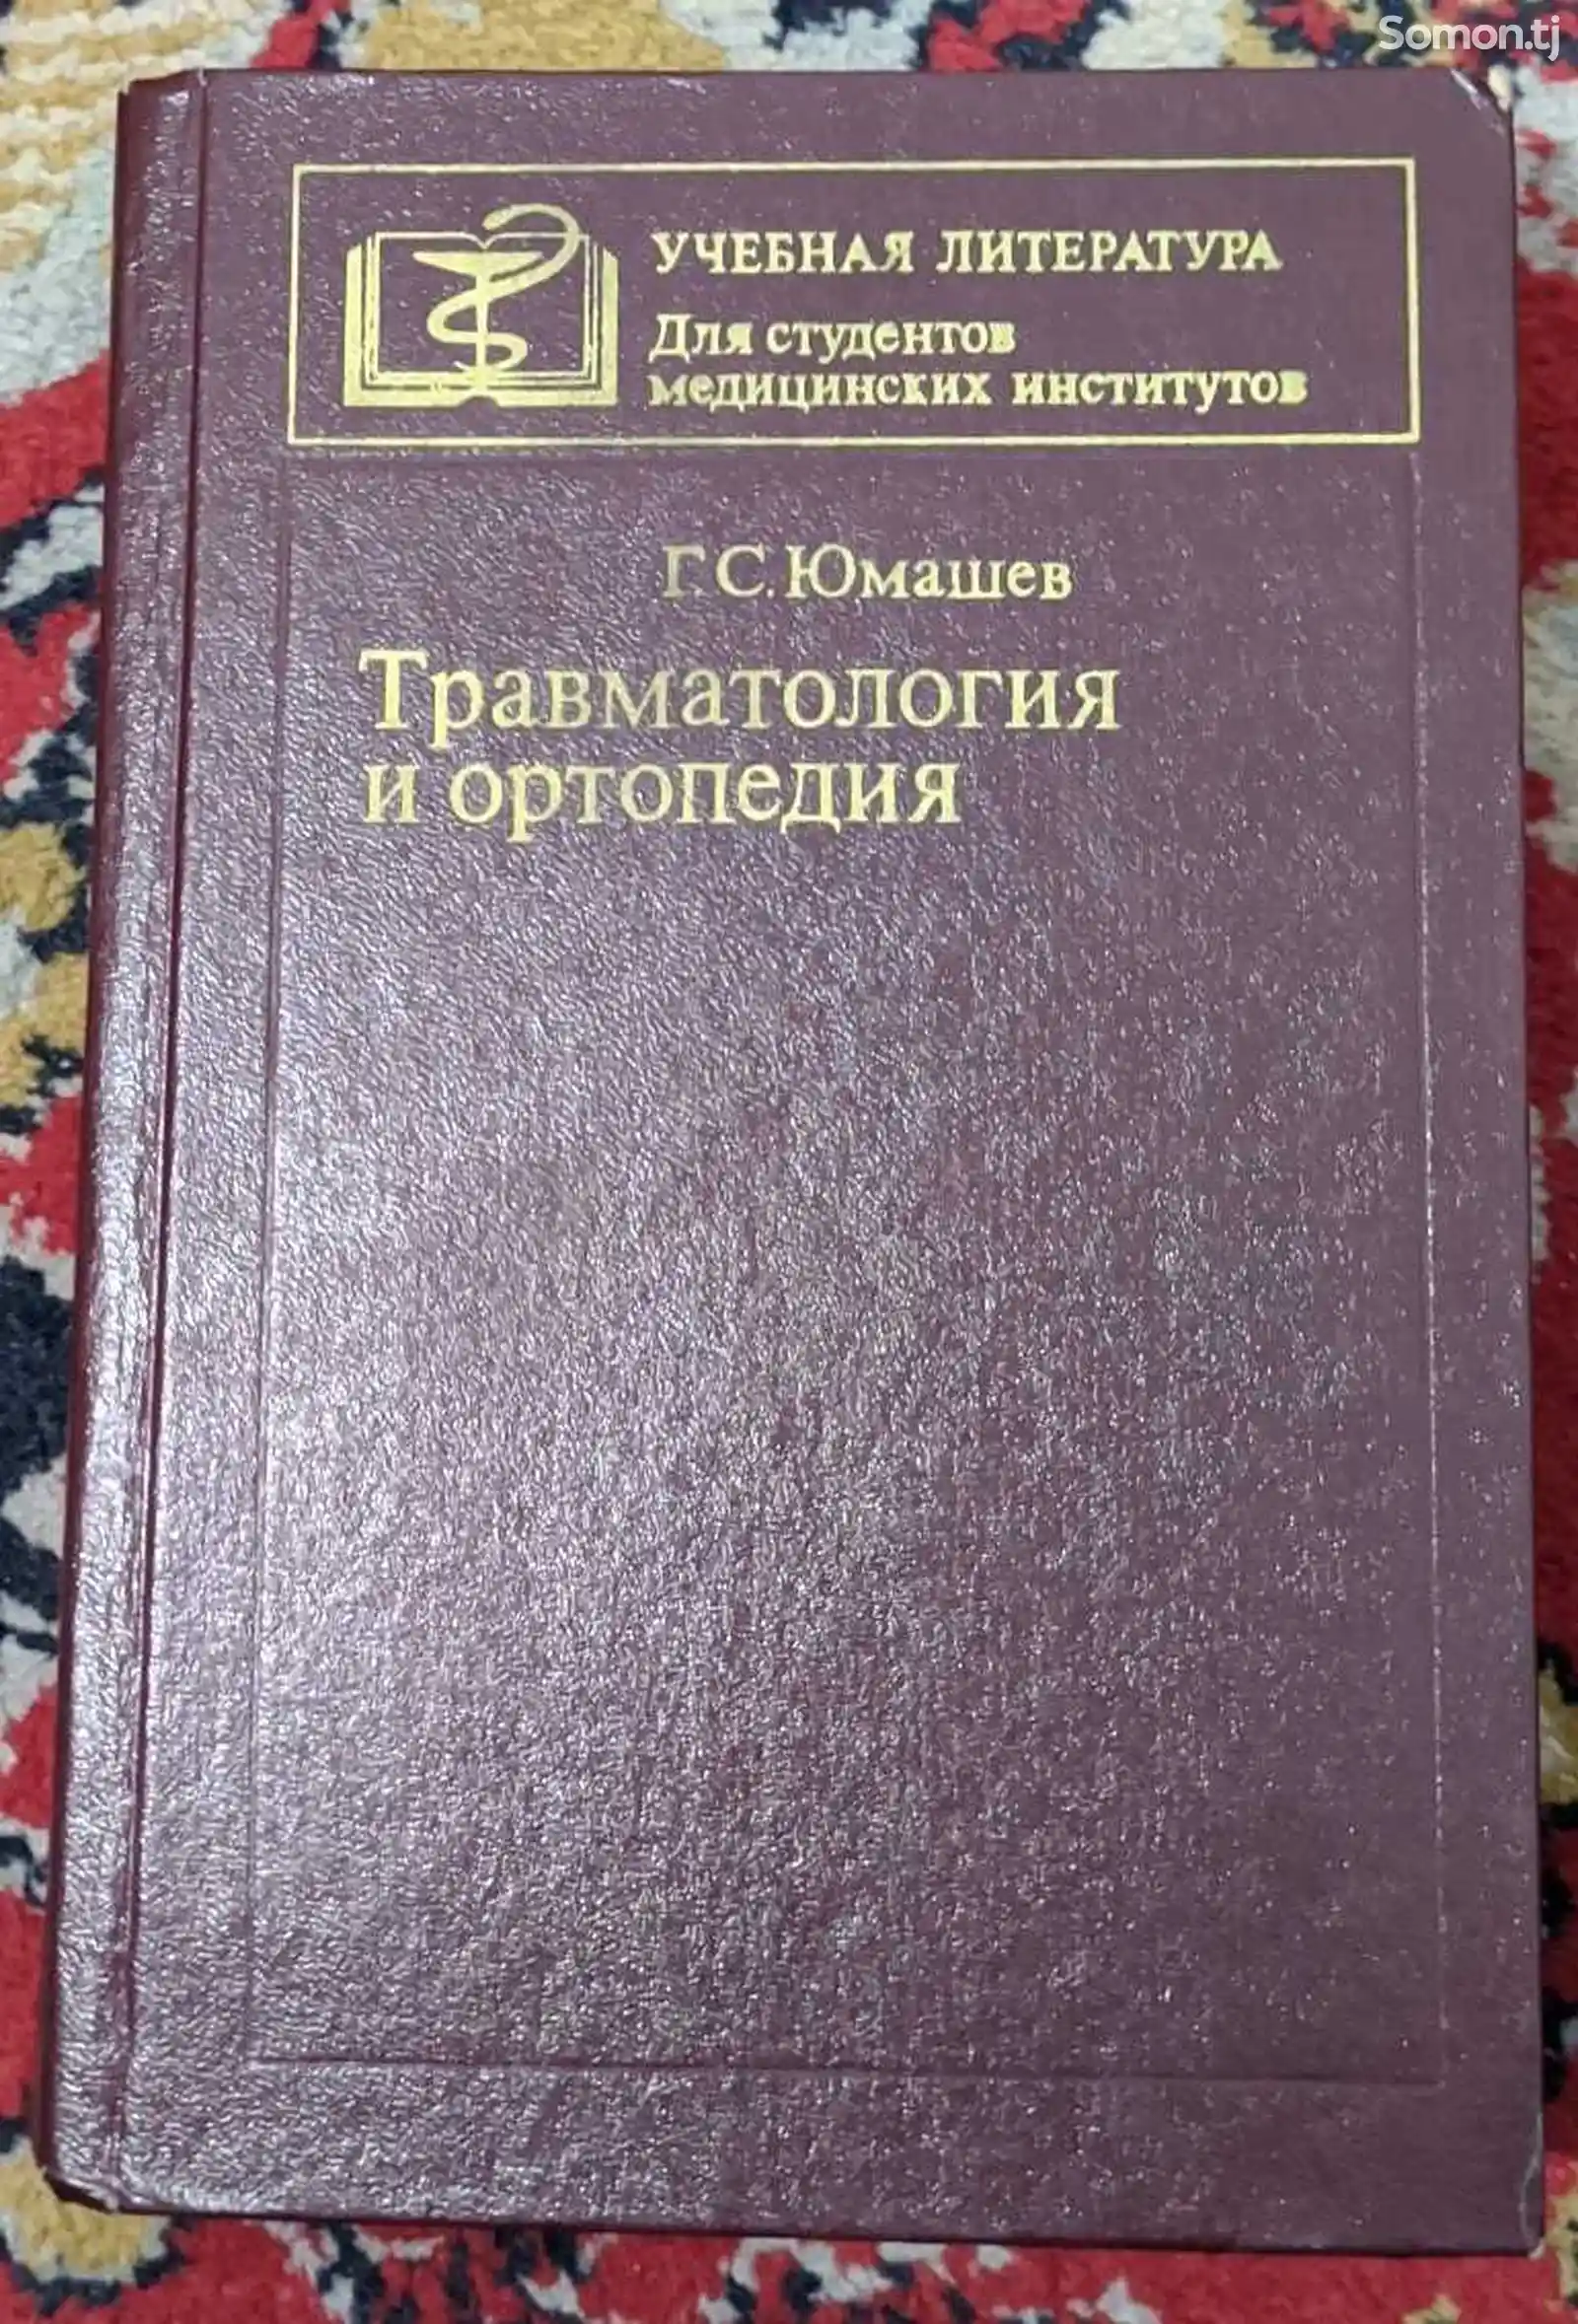 Книга Травматология и ортопедия-1